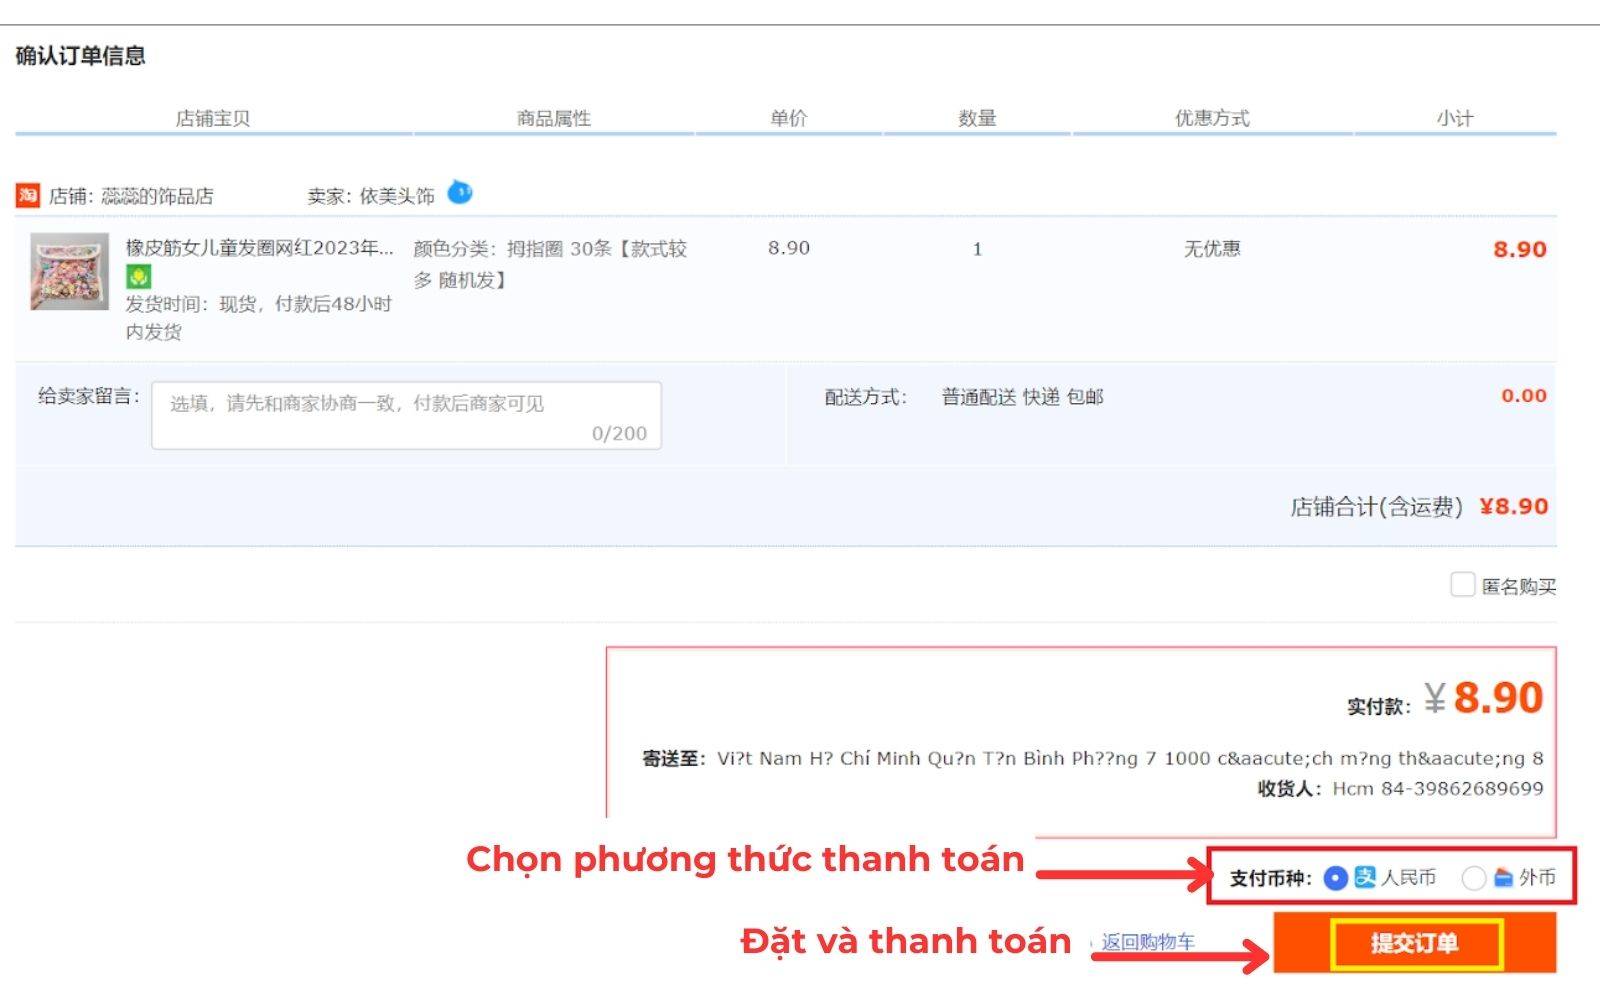 Chọn phương thức thanh toán đơn nhập hàng từ Taobao.com phù hợp